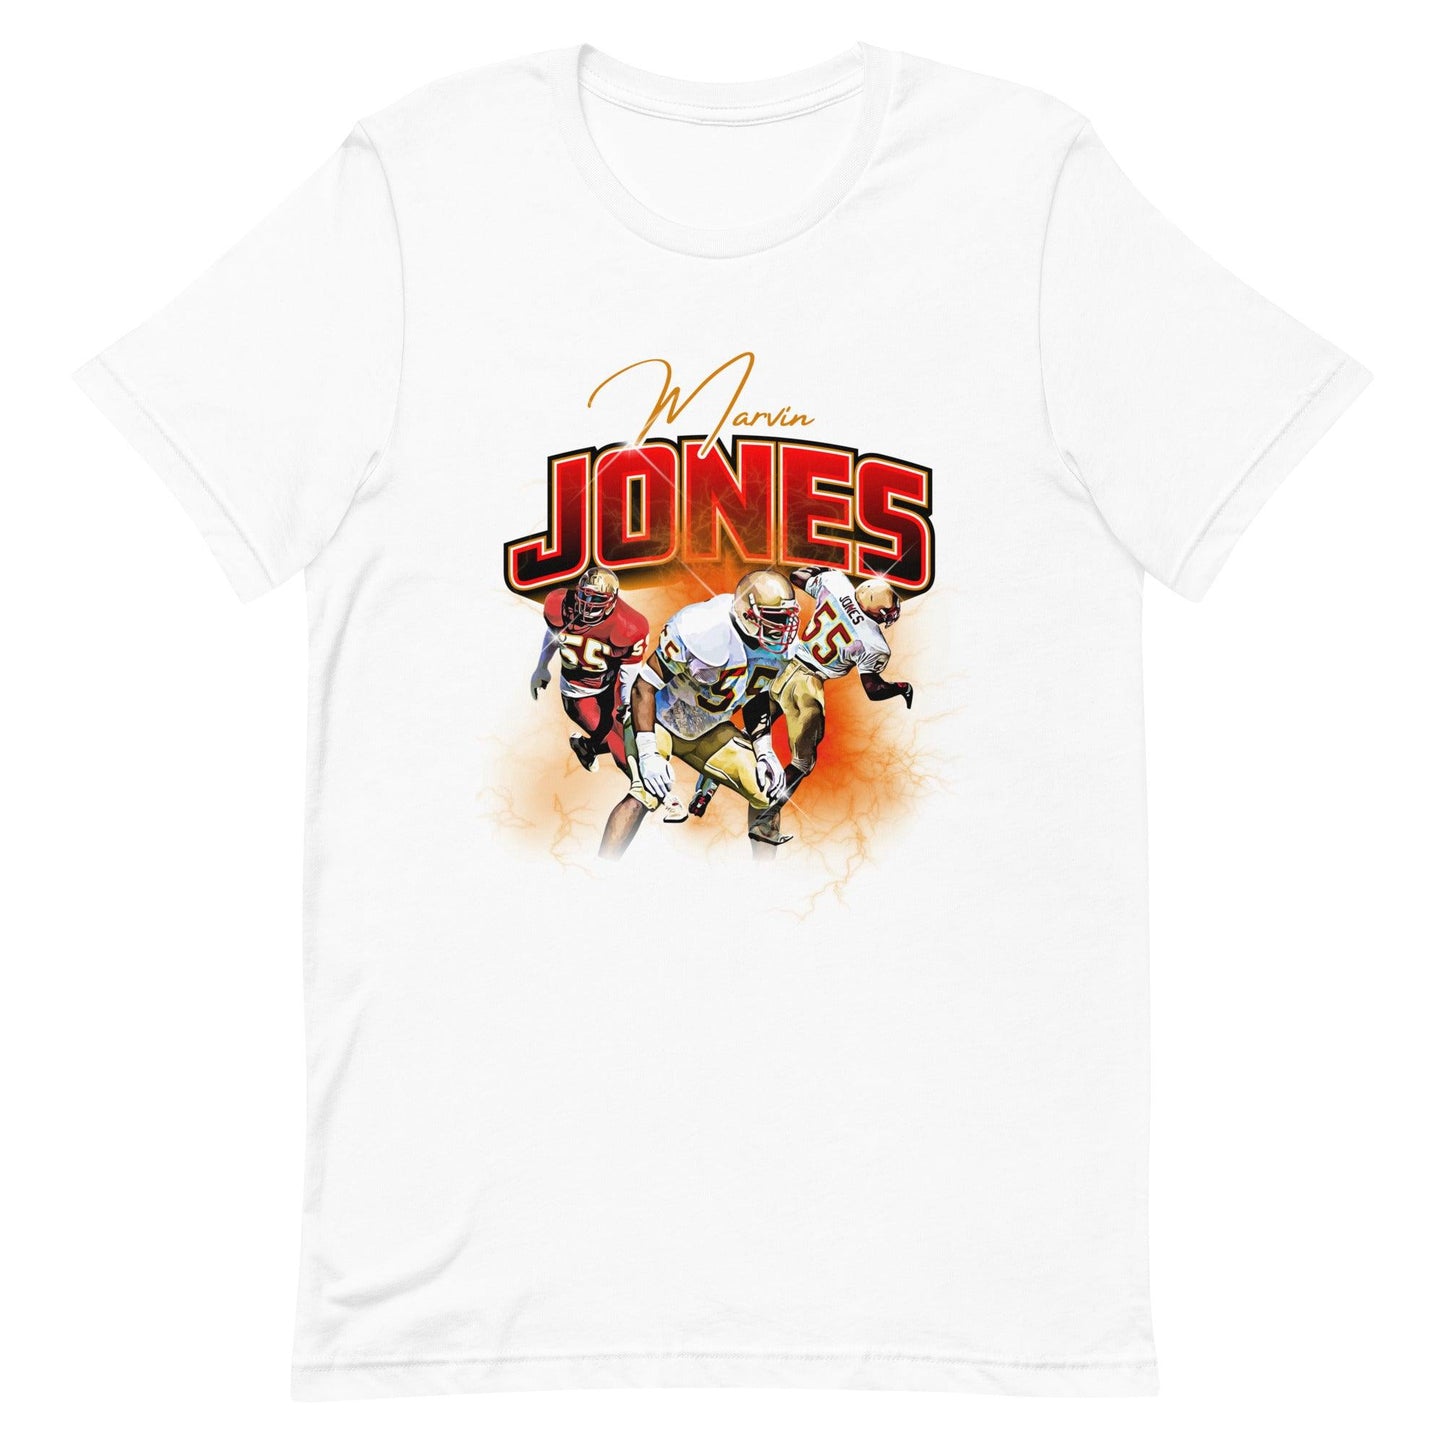 Marvin Jones "Vintage" t-shirt - Fan Arch